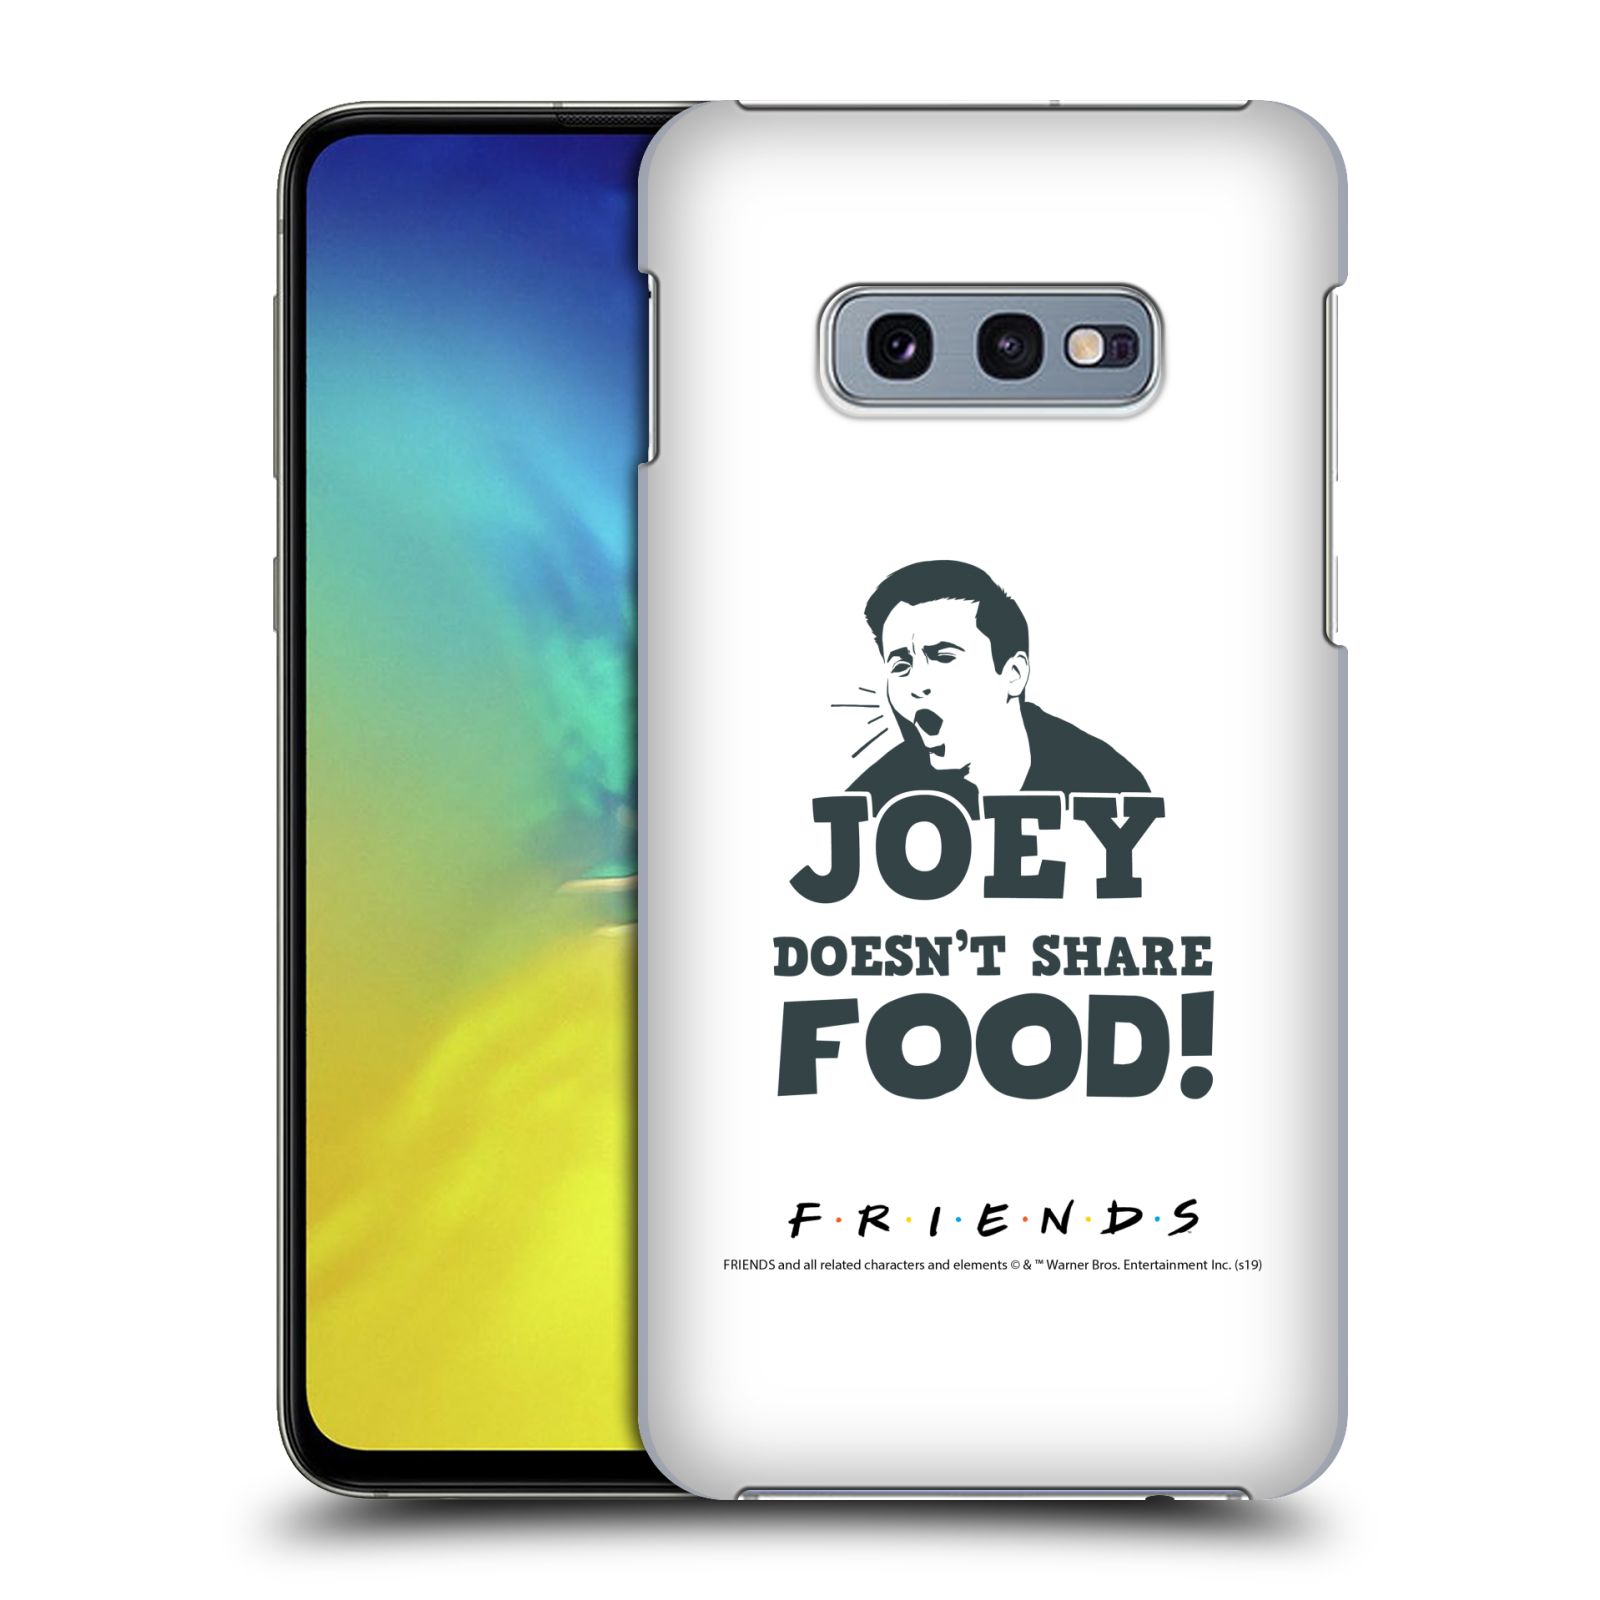 Pouzdro na mobil Samsung Galaxy S10e - HEAD CASE - Seriál Přátelé - Joey se o jídlo nedělí